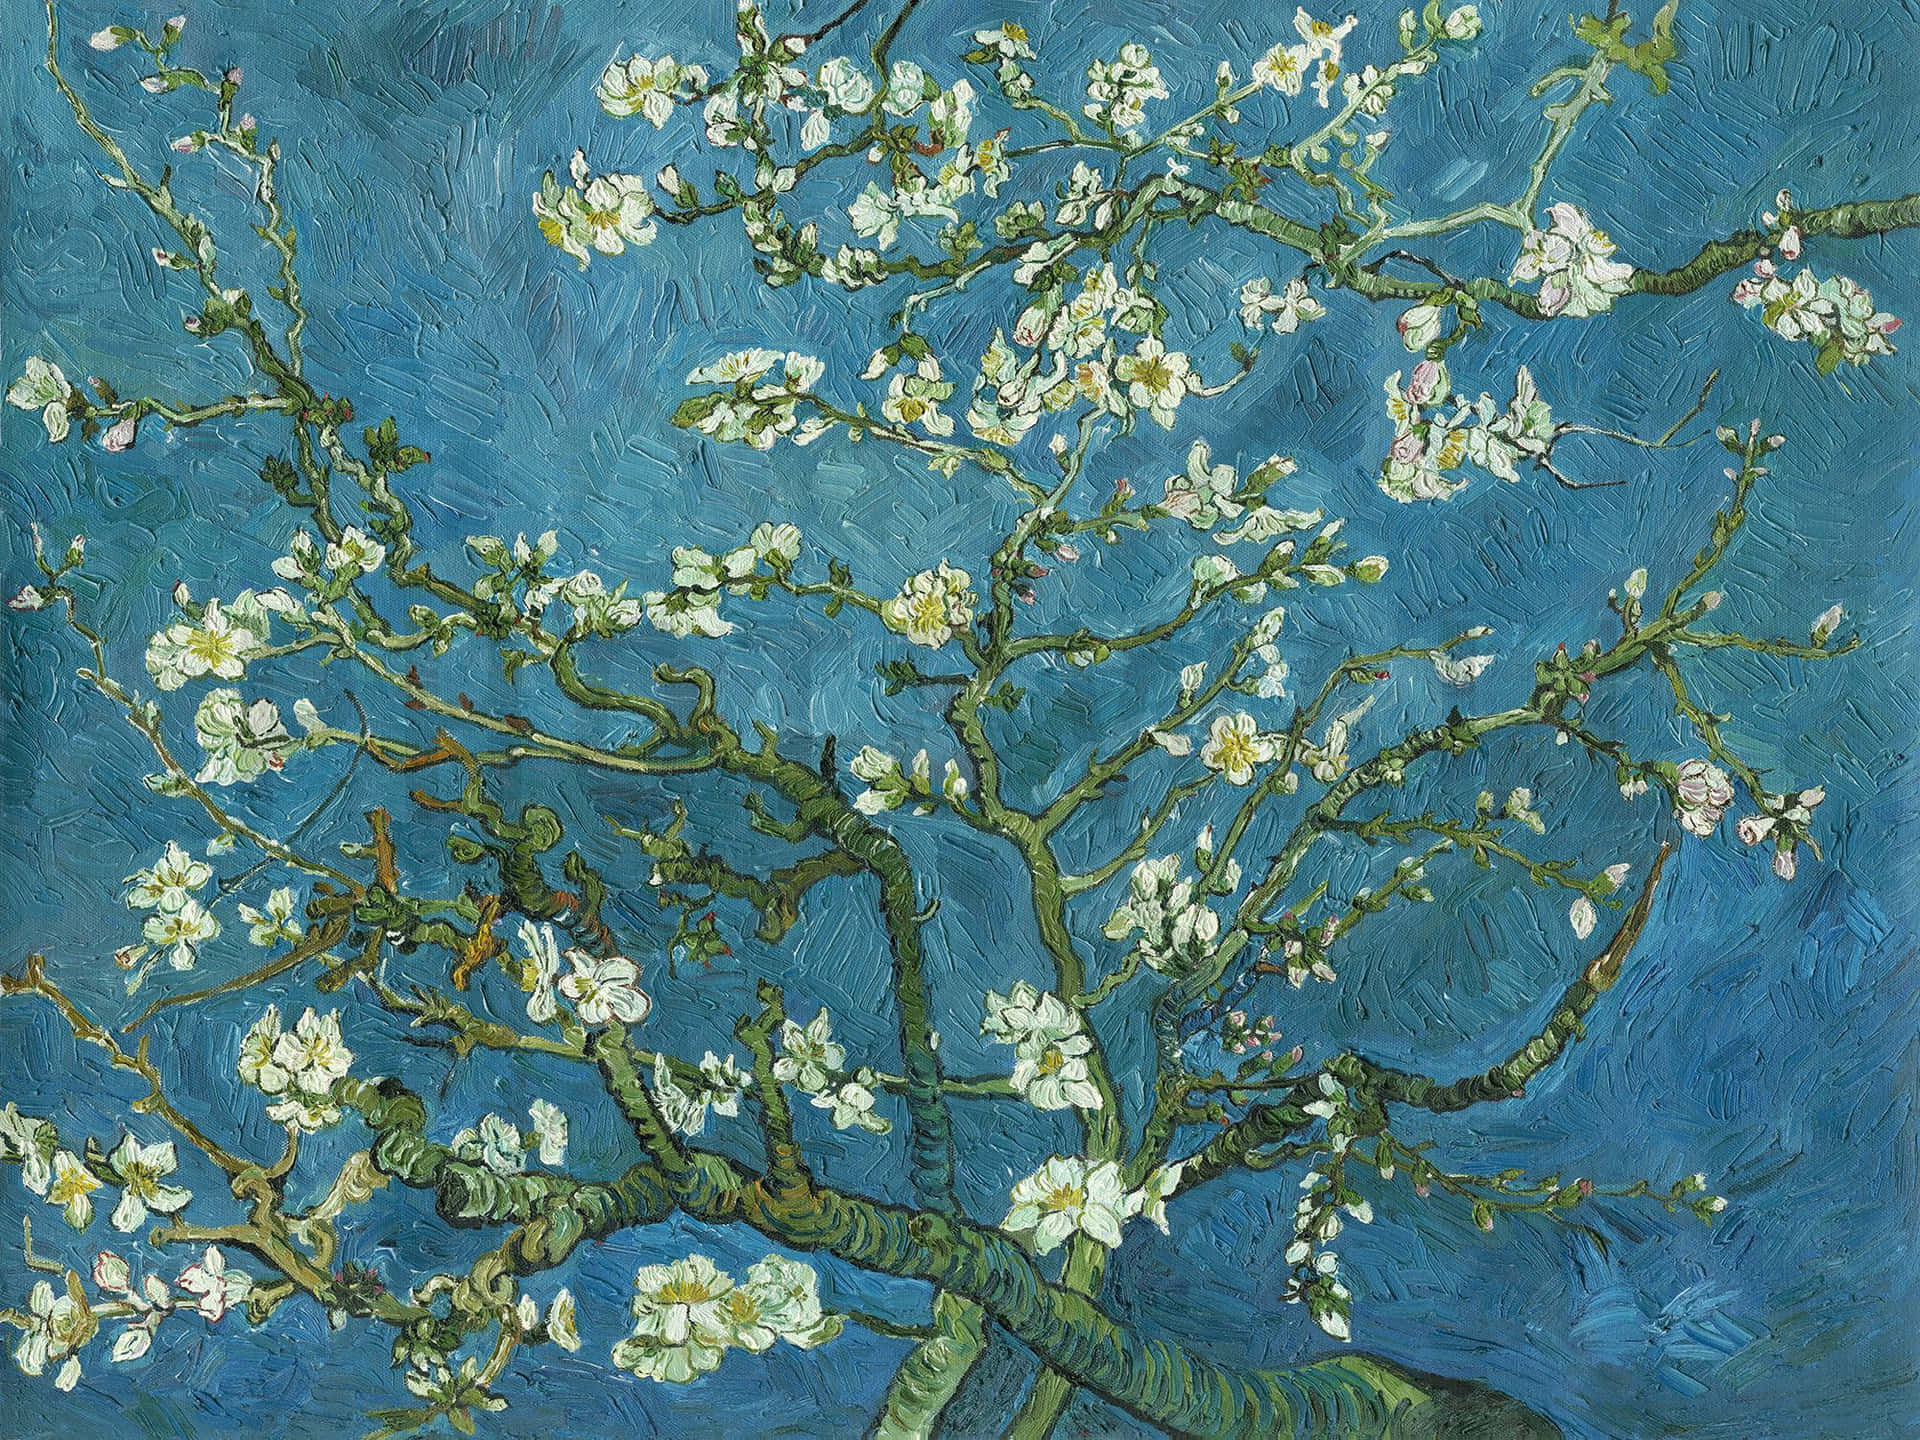 Enikonisk Målning Av Mandelblommor Av Vincent Van Gogh. Wallpaper